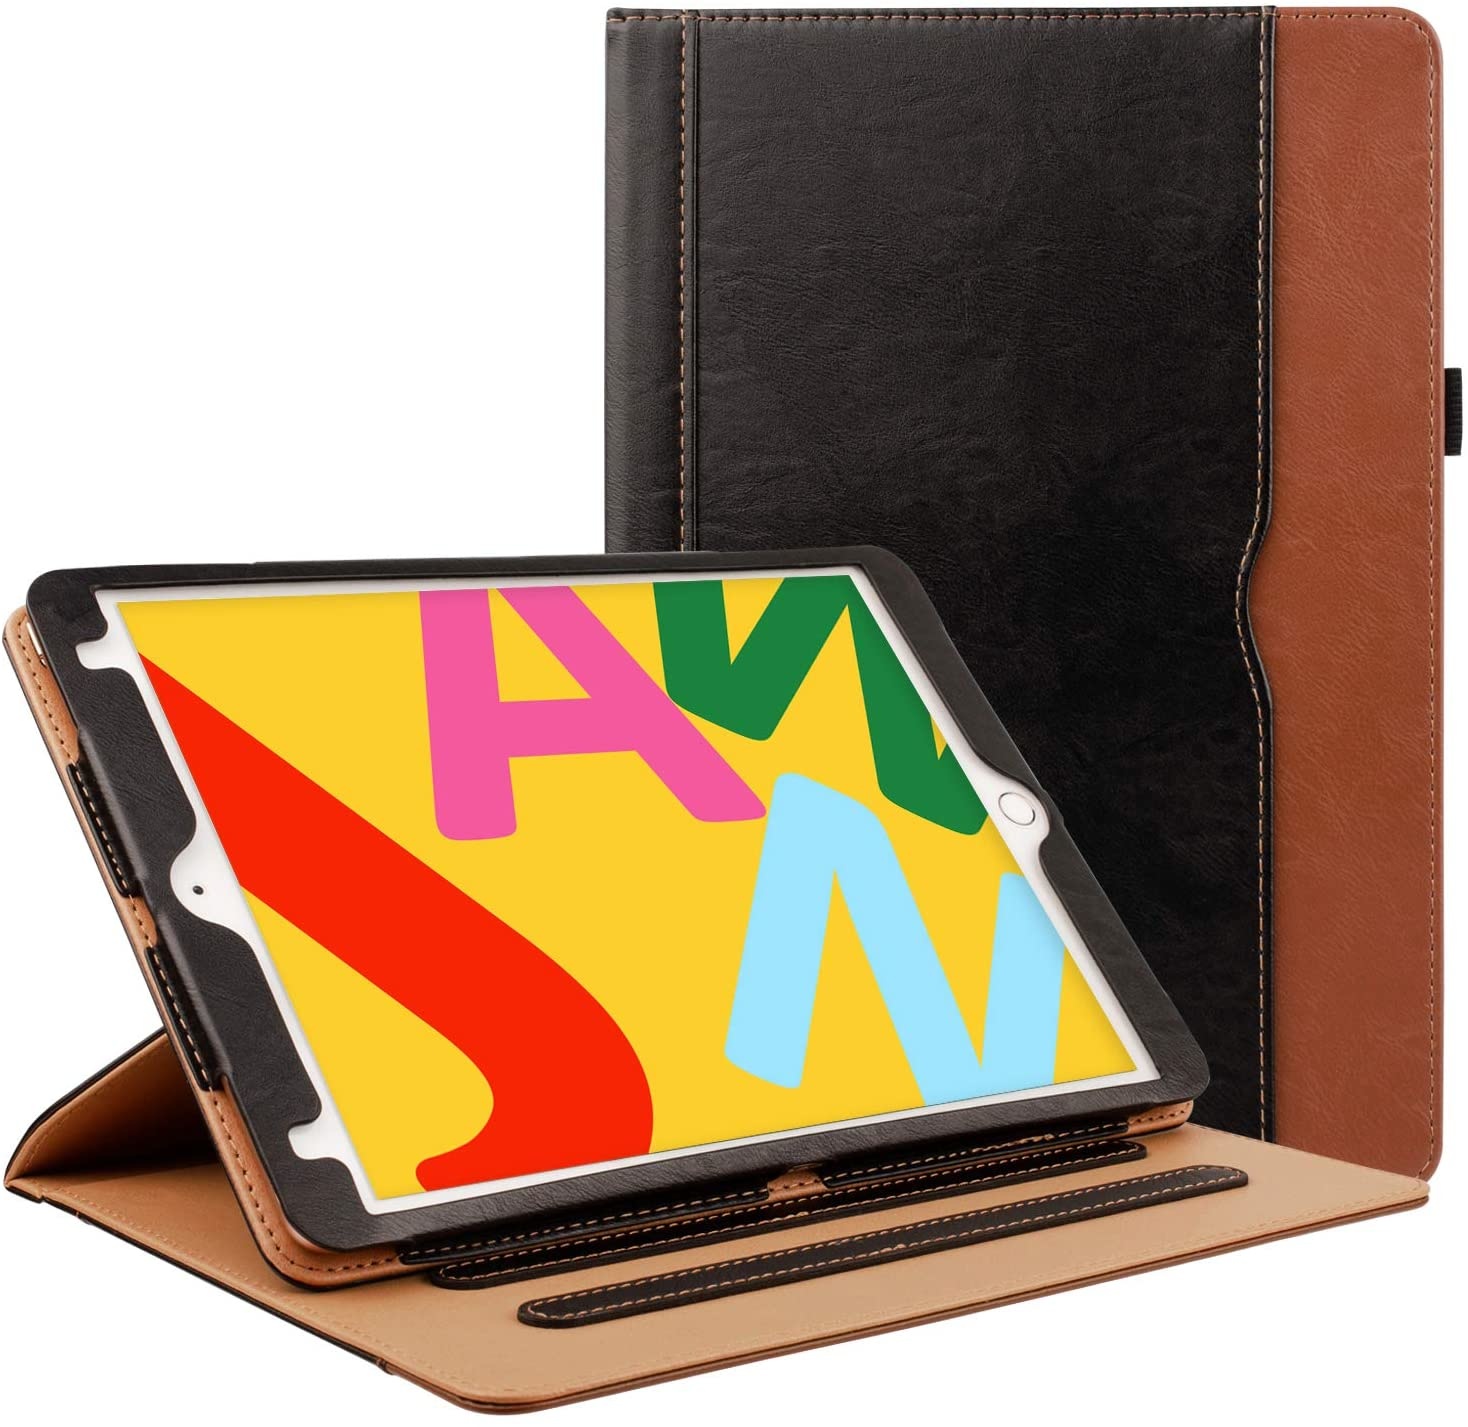 klasse Gespierd Voorstellen iPad hoes 2020/2021 10.2 Inch luxe leer bruin zwart kopen? - iPadspullekes